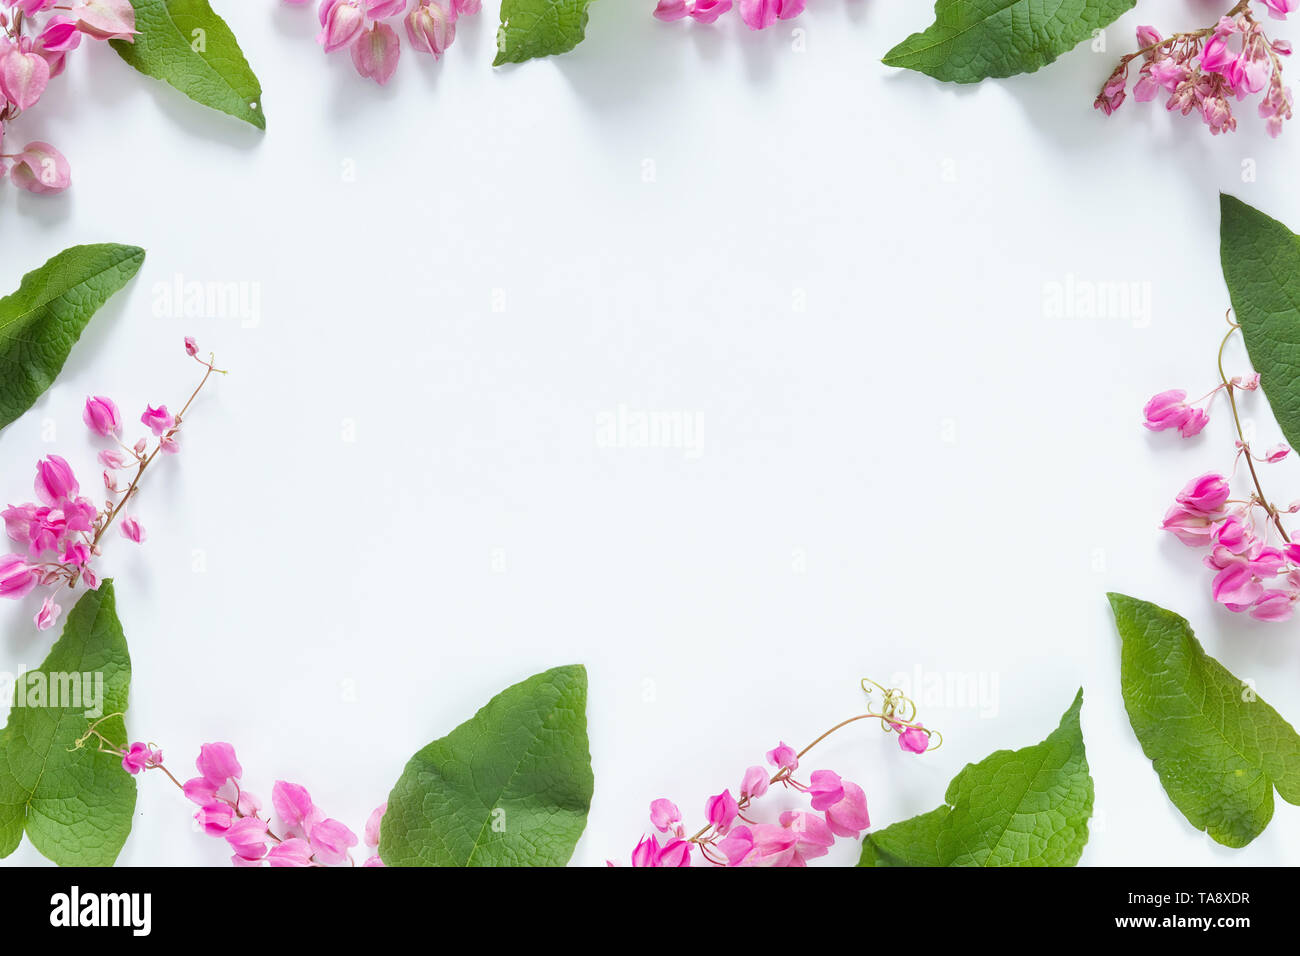 Rosa Blumen Rahmen mit Grün auf weißem Hintergrund mit Kopie Raum für Grußansage. Flach, Ansicht von oben, kopieren Raum Stockfoto